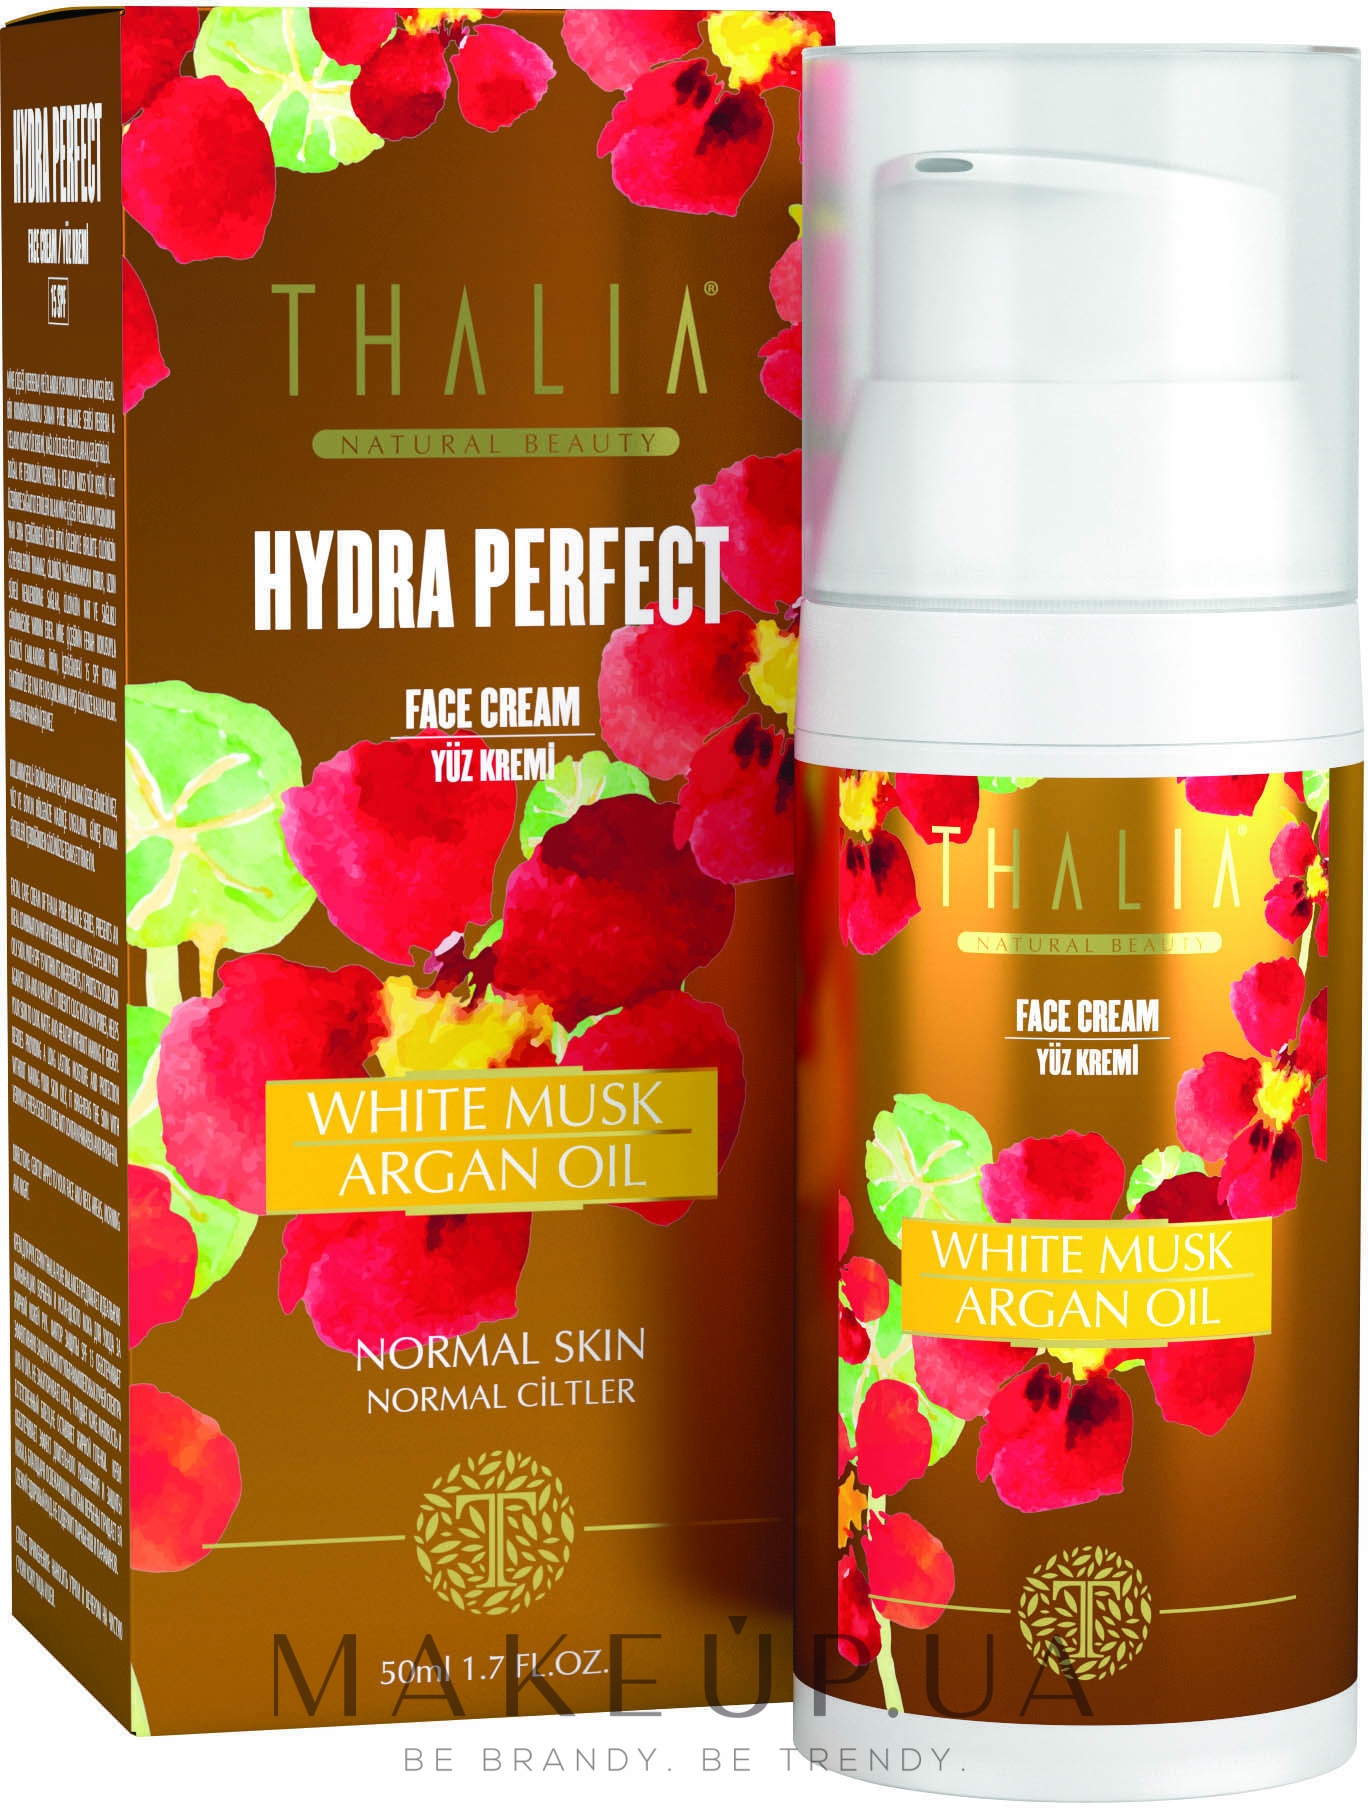 Thalia Hydra Perfect White Musk Argan Oil Face Cream SPF15 - Омолаживающий  крем для лица с белым мускусом и арганой: купить по лучшей цене в Украине